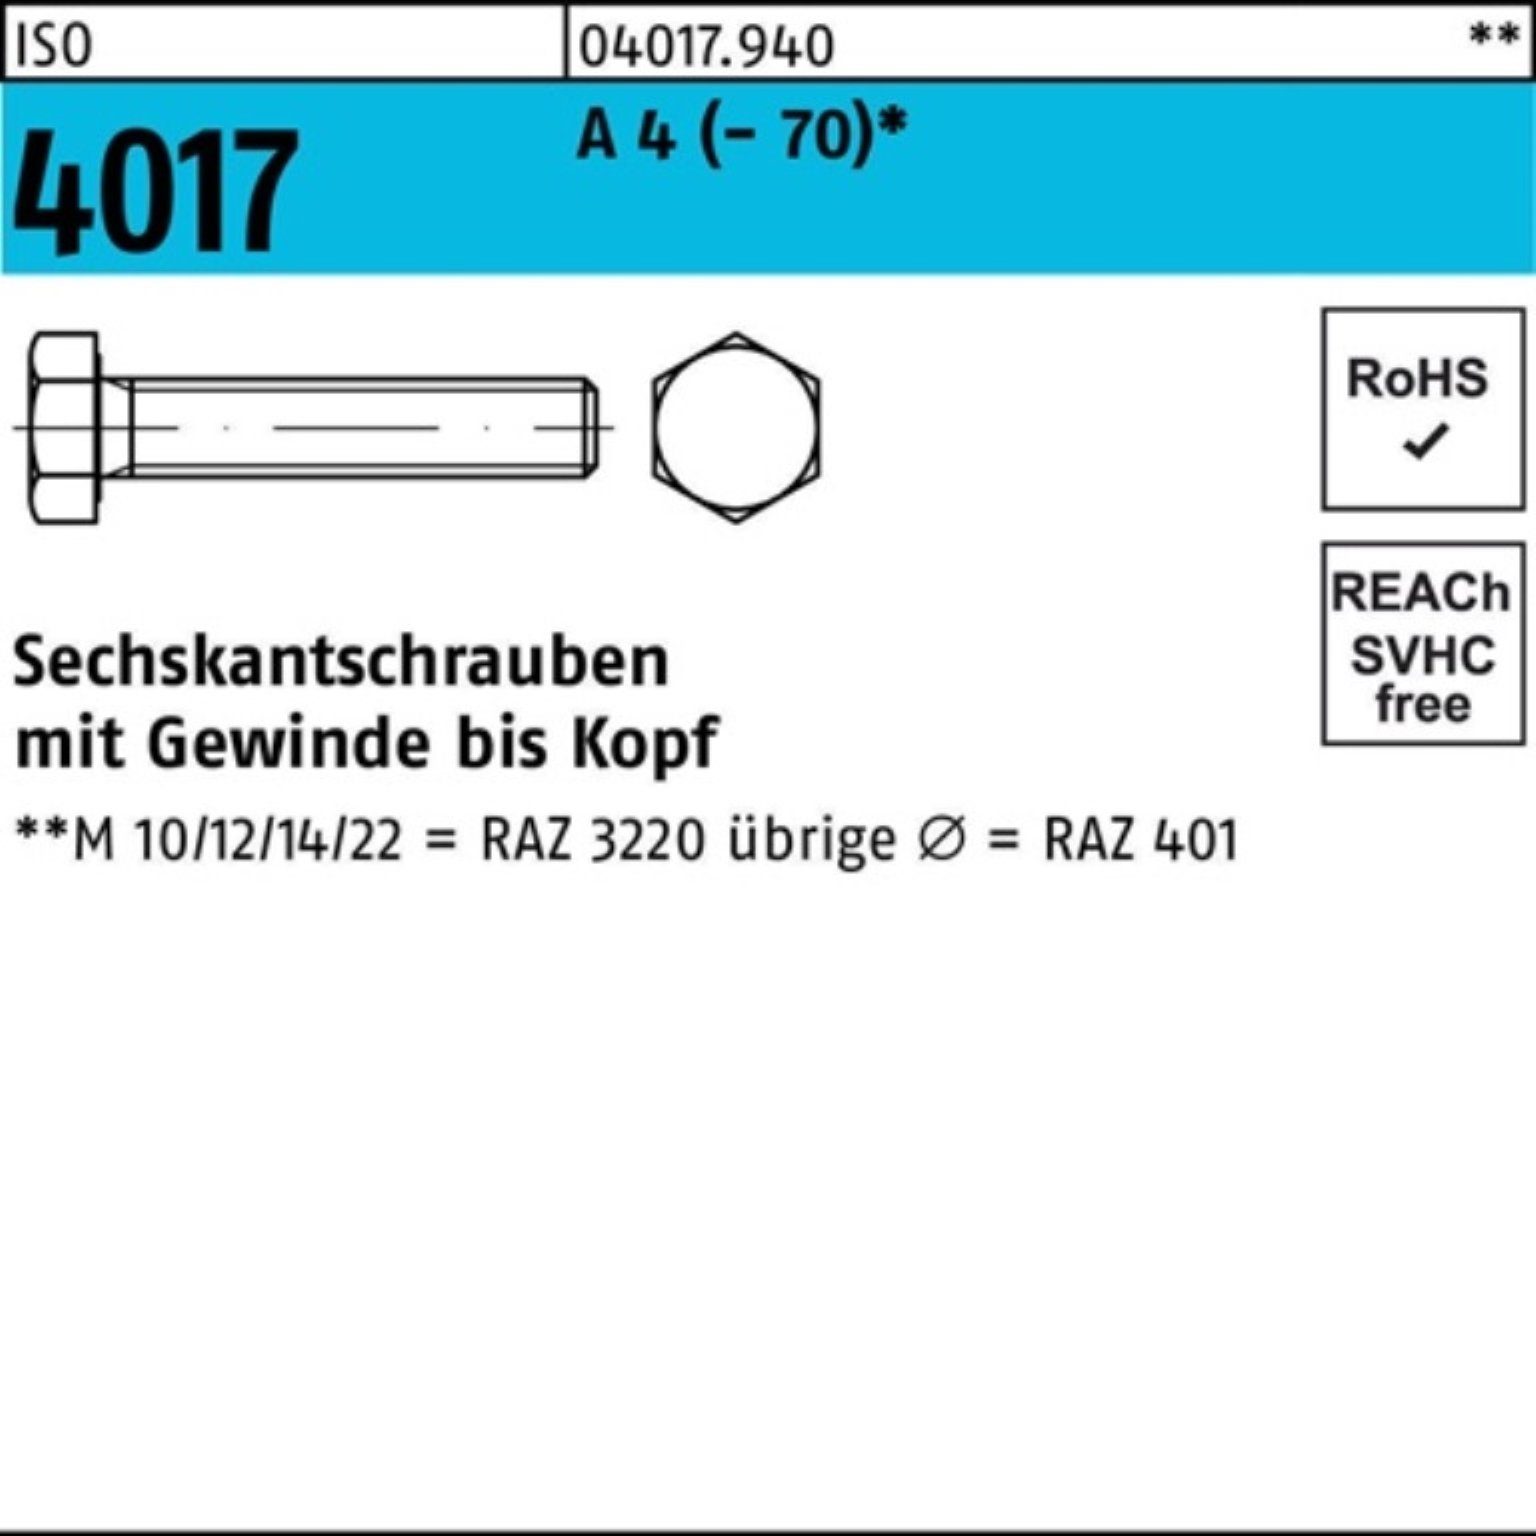 Bufab Sechskantschraube 200er Pack 4 (70) ISO 40 4017 M6x Stück VG Sechskantschraube 200 A